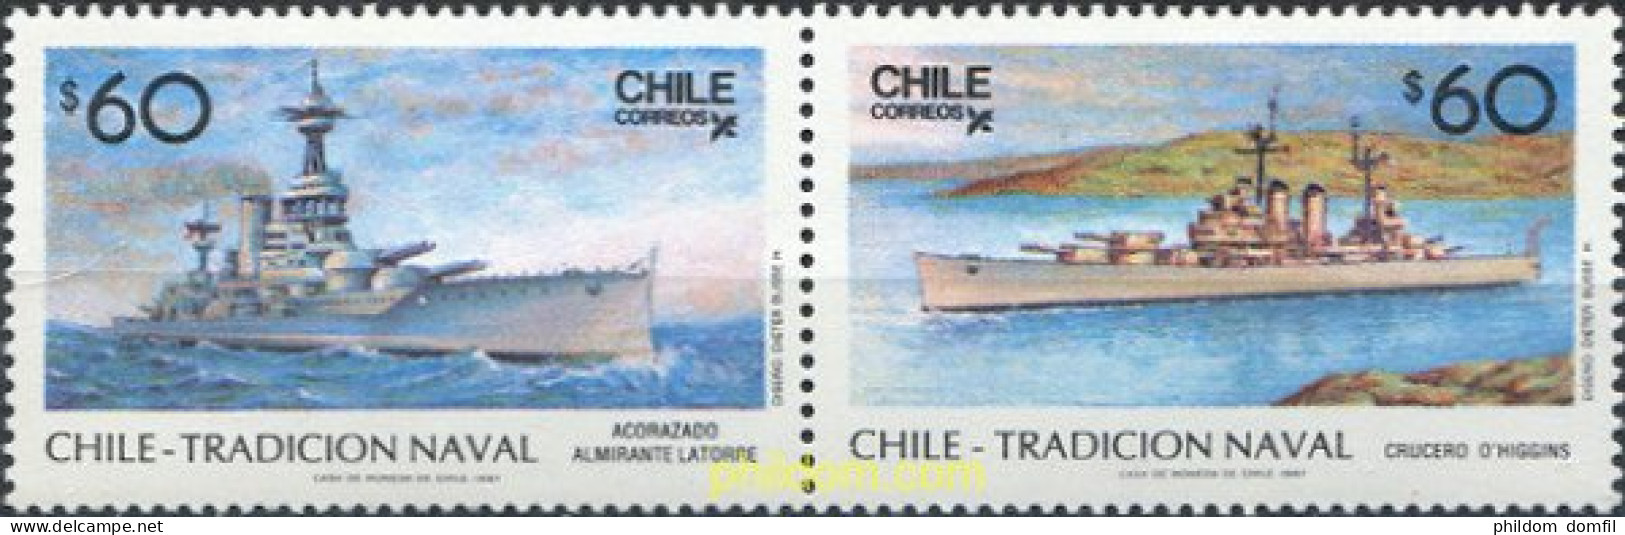 303406 MNH CHILE 1987 CHILE TRADICION NAVAL - Chile